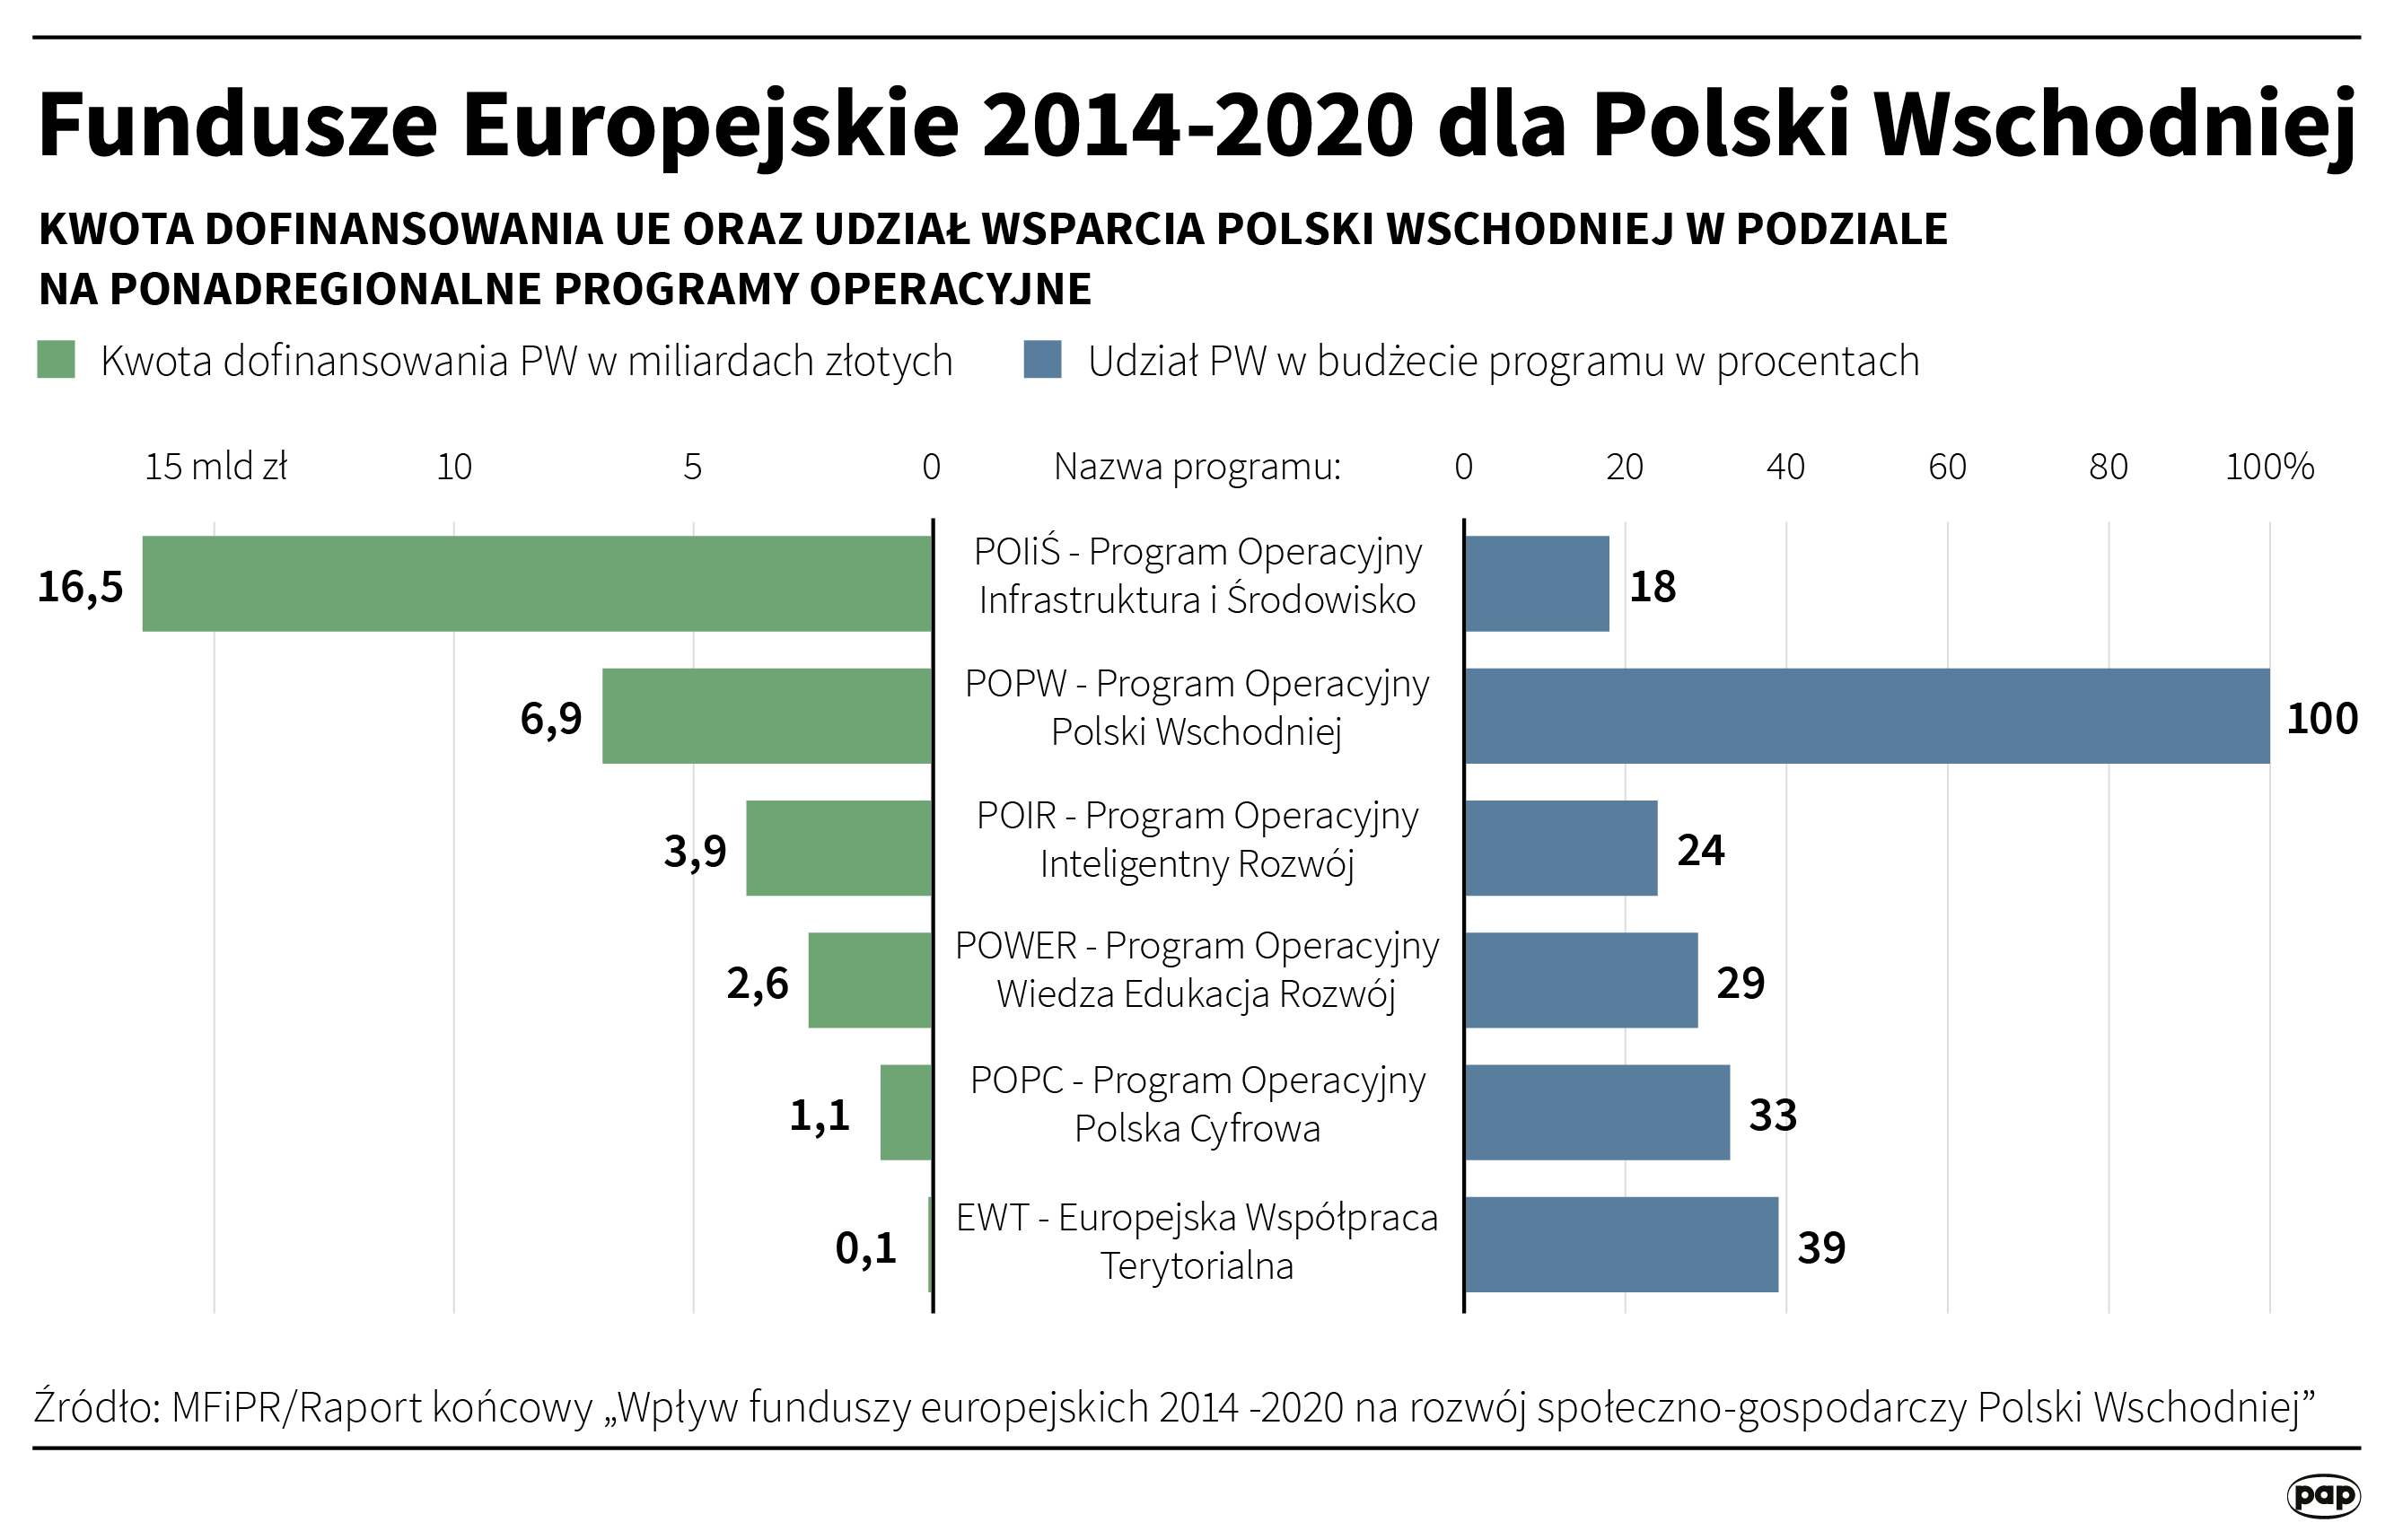 Fundusze Europejskie dla Polski Wschodniej